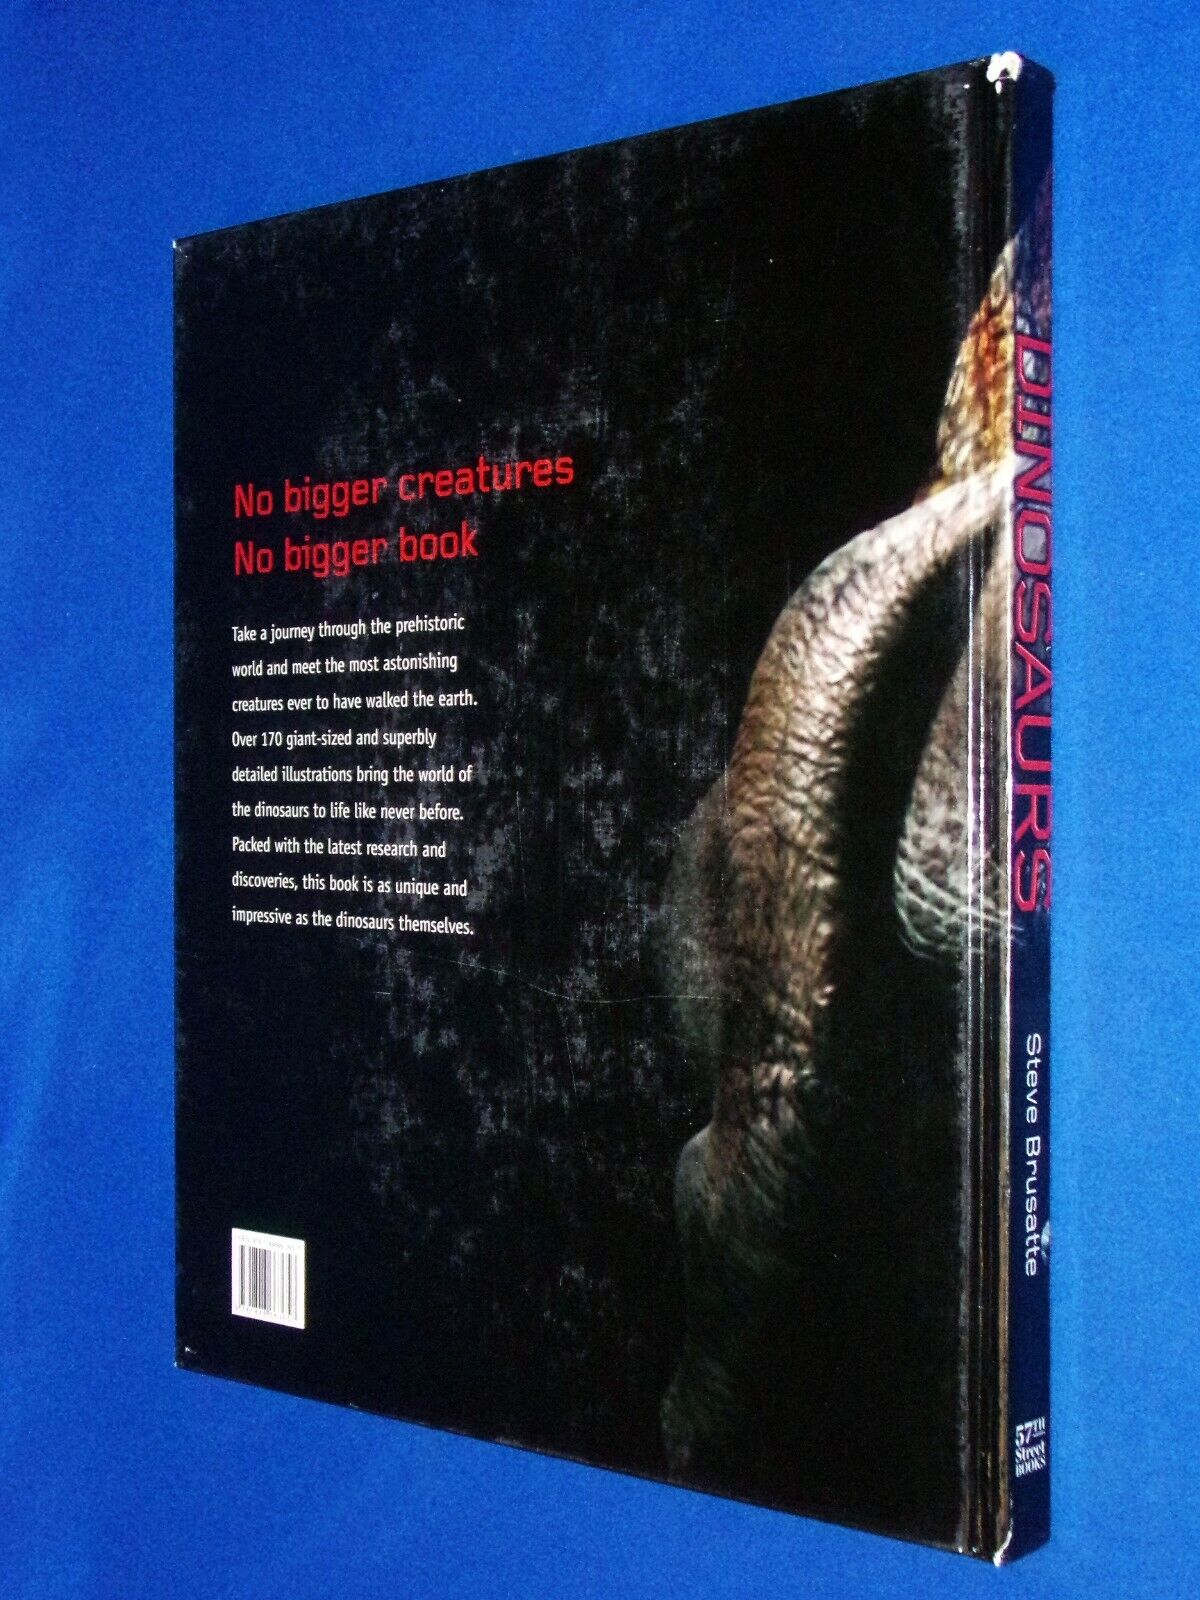 GIANT SIZED 2008 Dinosaurs 1st Ed Hardcover Book Steve Brusatte 14x17  Illustrate